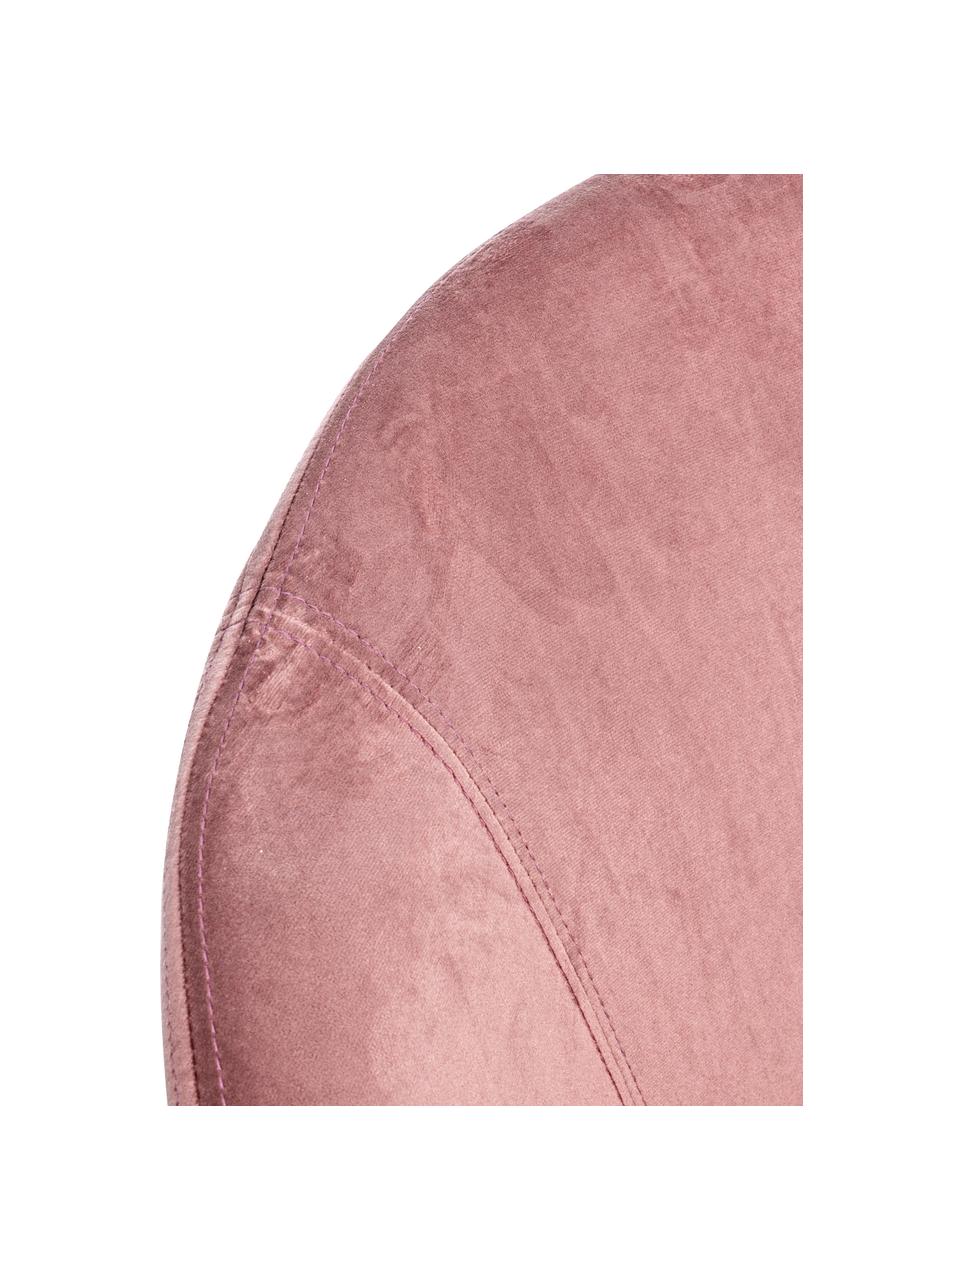 Fauteuil à bascule en velours rose Annika, Velours rose, larg. 74 x prof. 87 cm